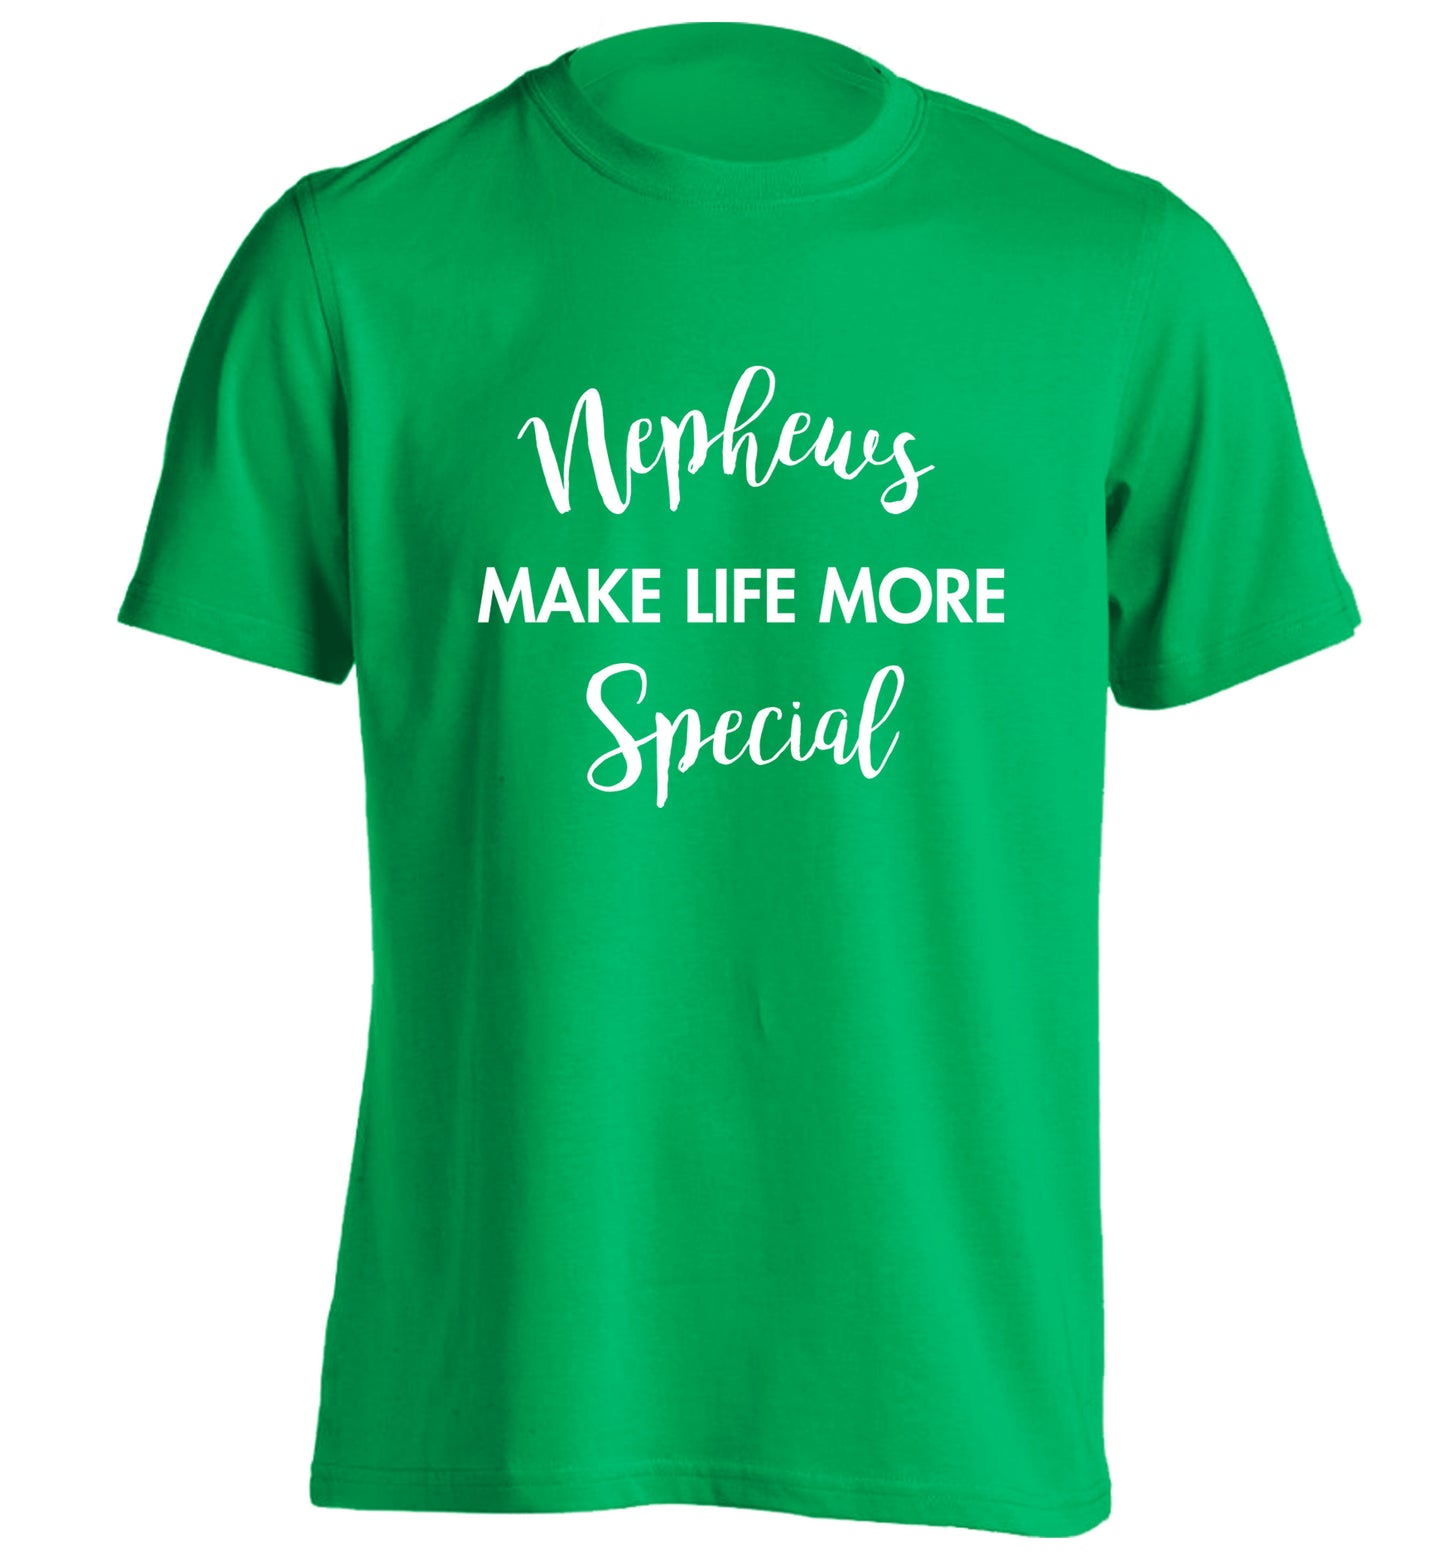 Nephews make life more special adults unisex green Tshirt 2XL